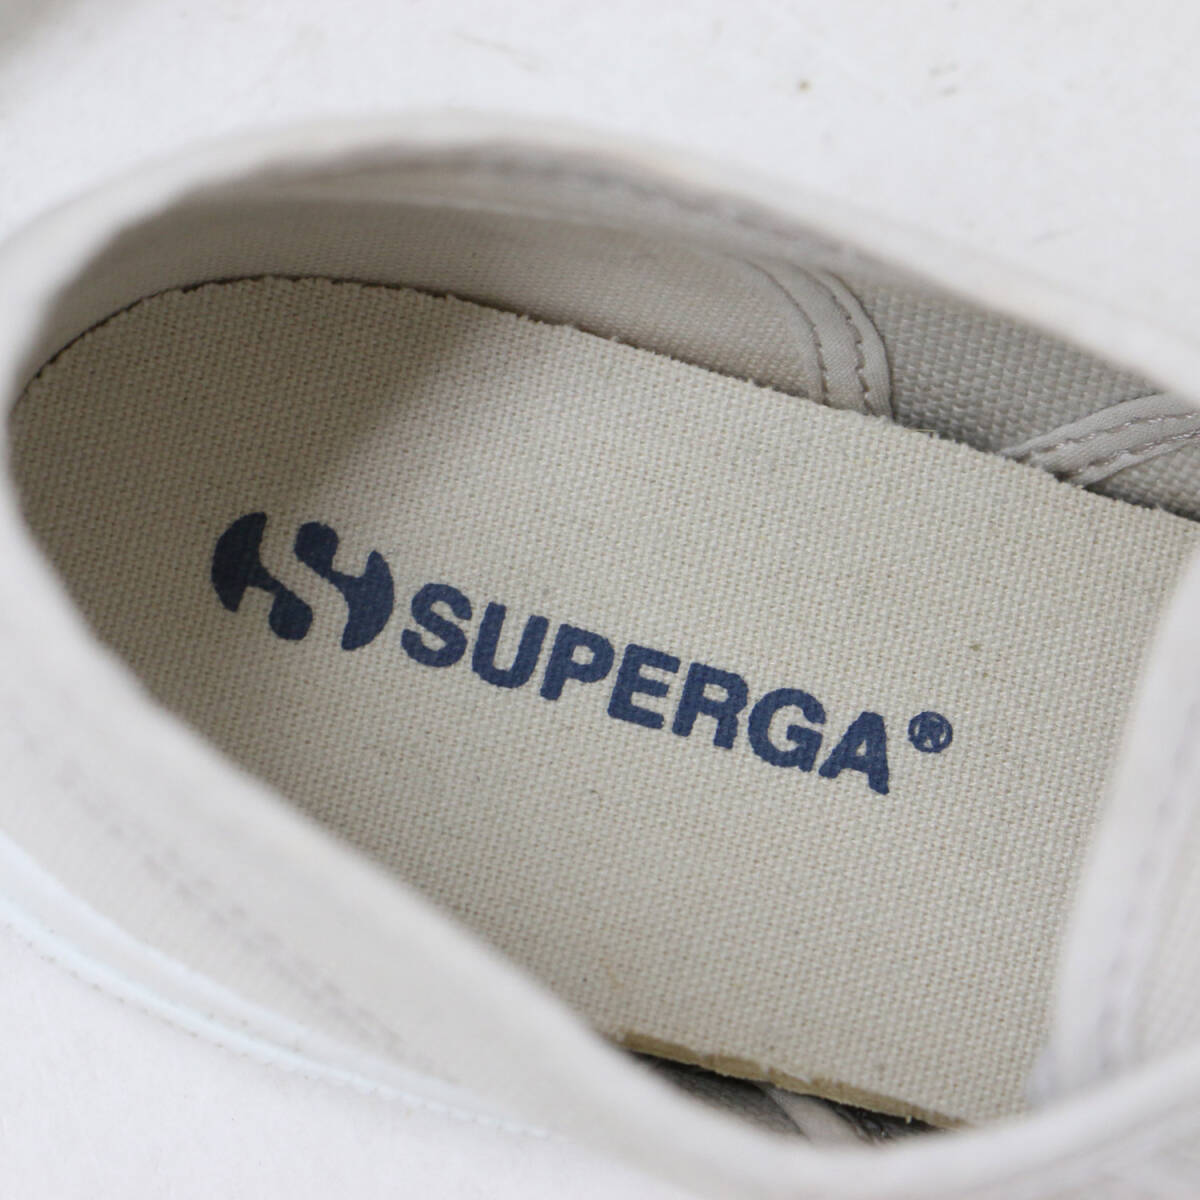 SUPERGA スペルガ スニーカー ライトベージュ 39(25.0cm) COTU CLASSIC ローカット レースアップ キャンバス シューズ シンプル_画像6